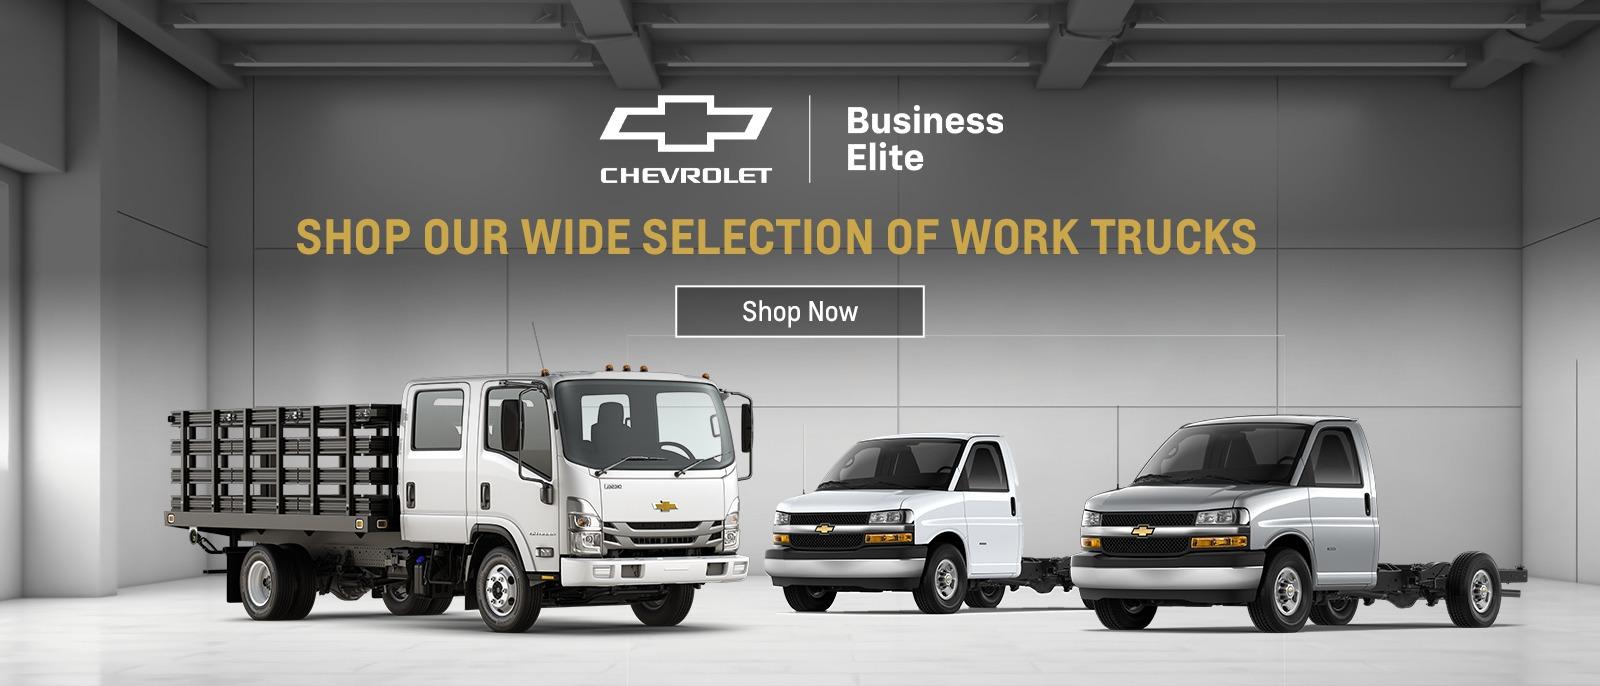 MER-101422_Chevrolet_Work-Trucks(1600x686) (2)